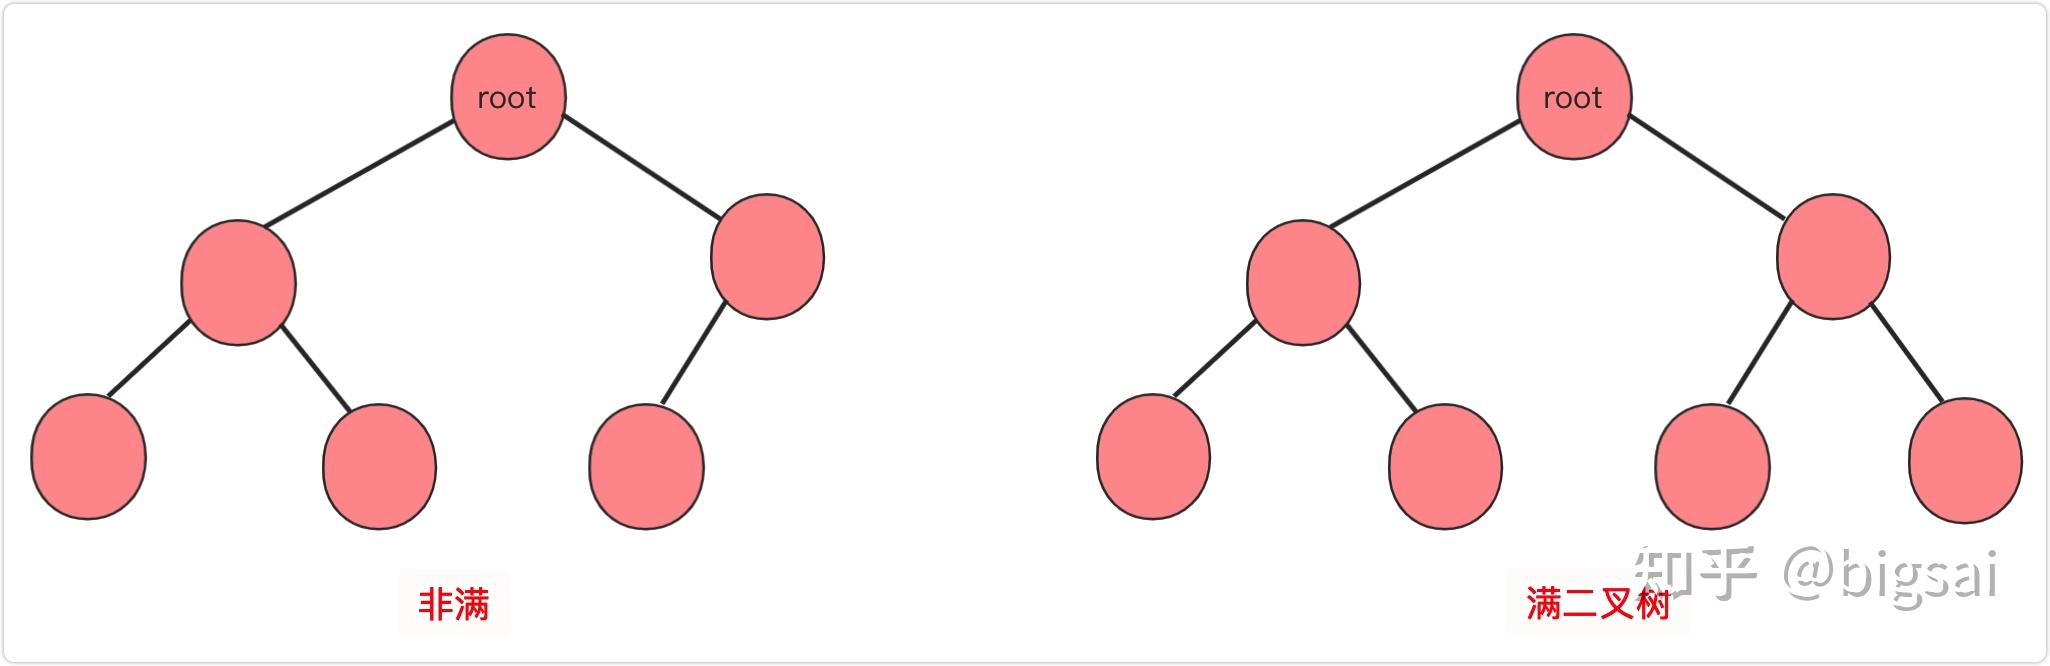 二叉排序树构造算法_二叉排序树构造算法是什么